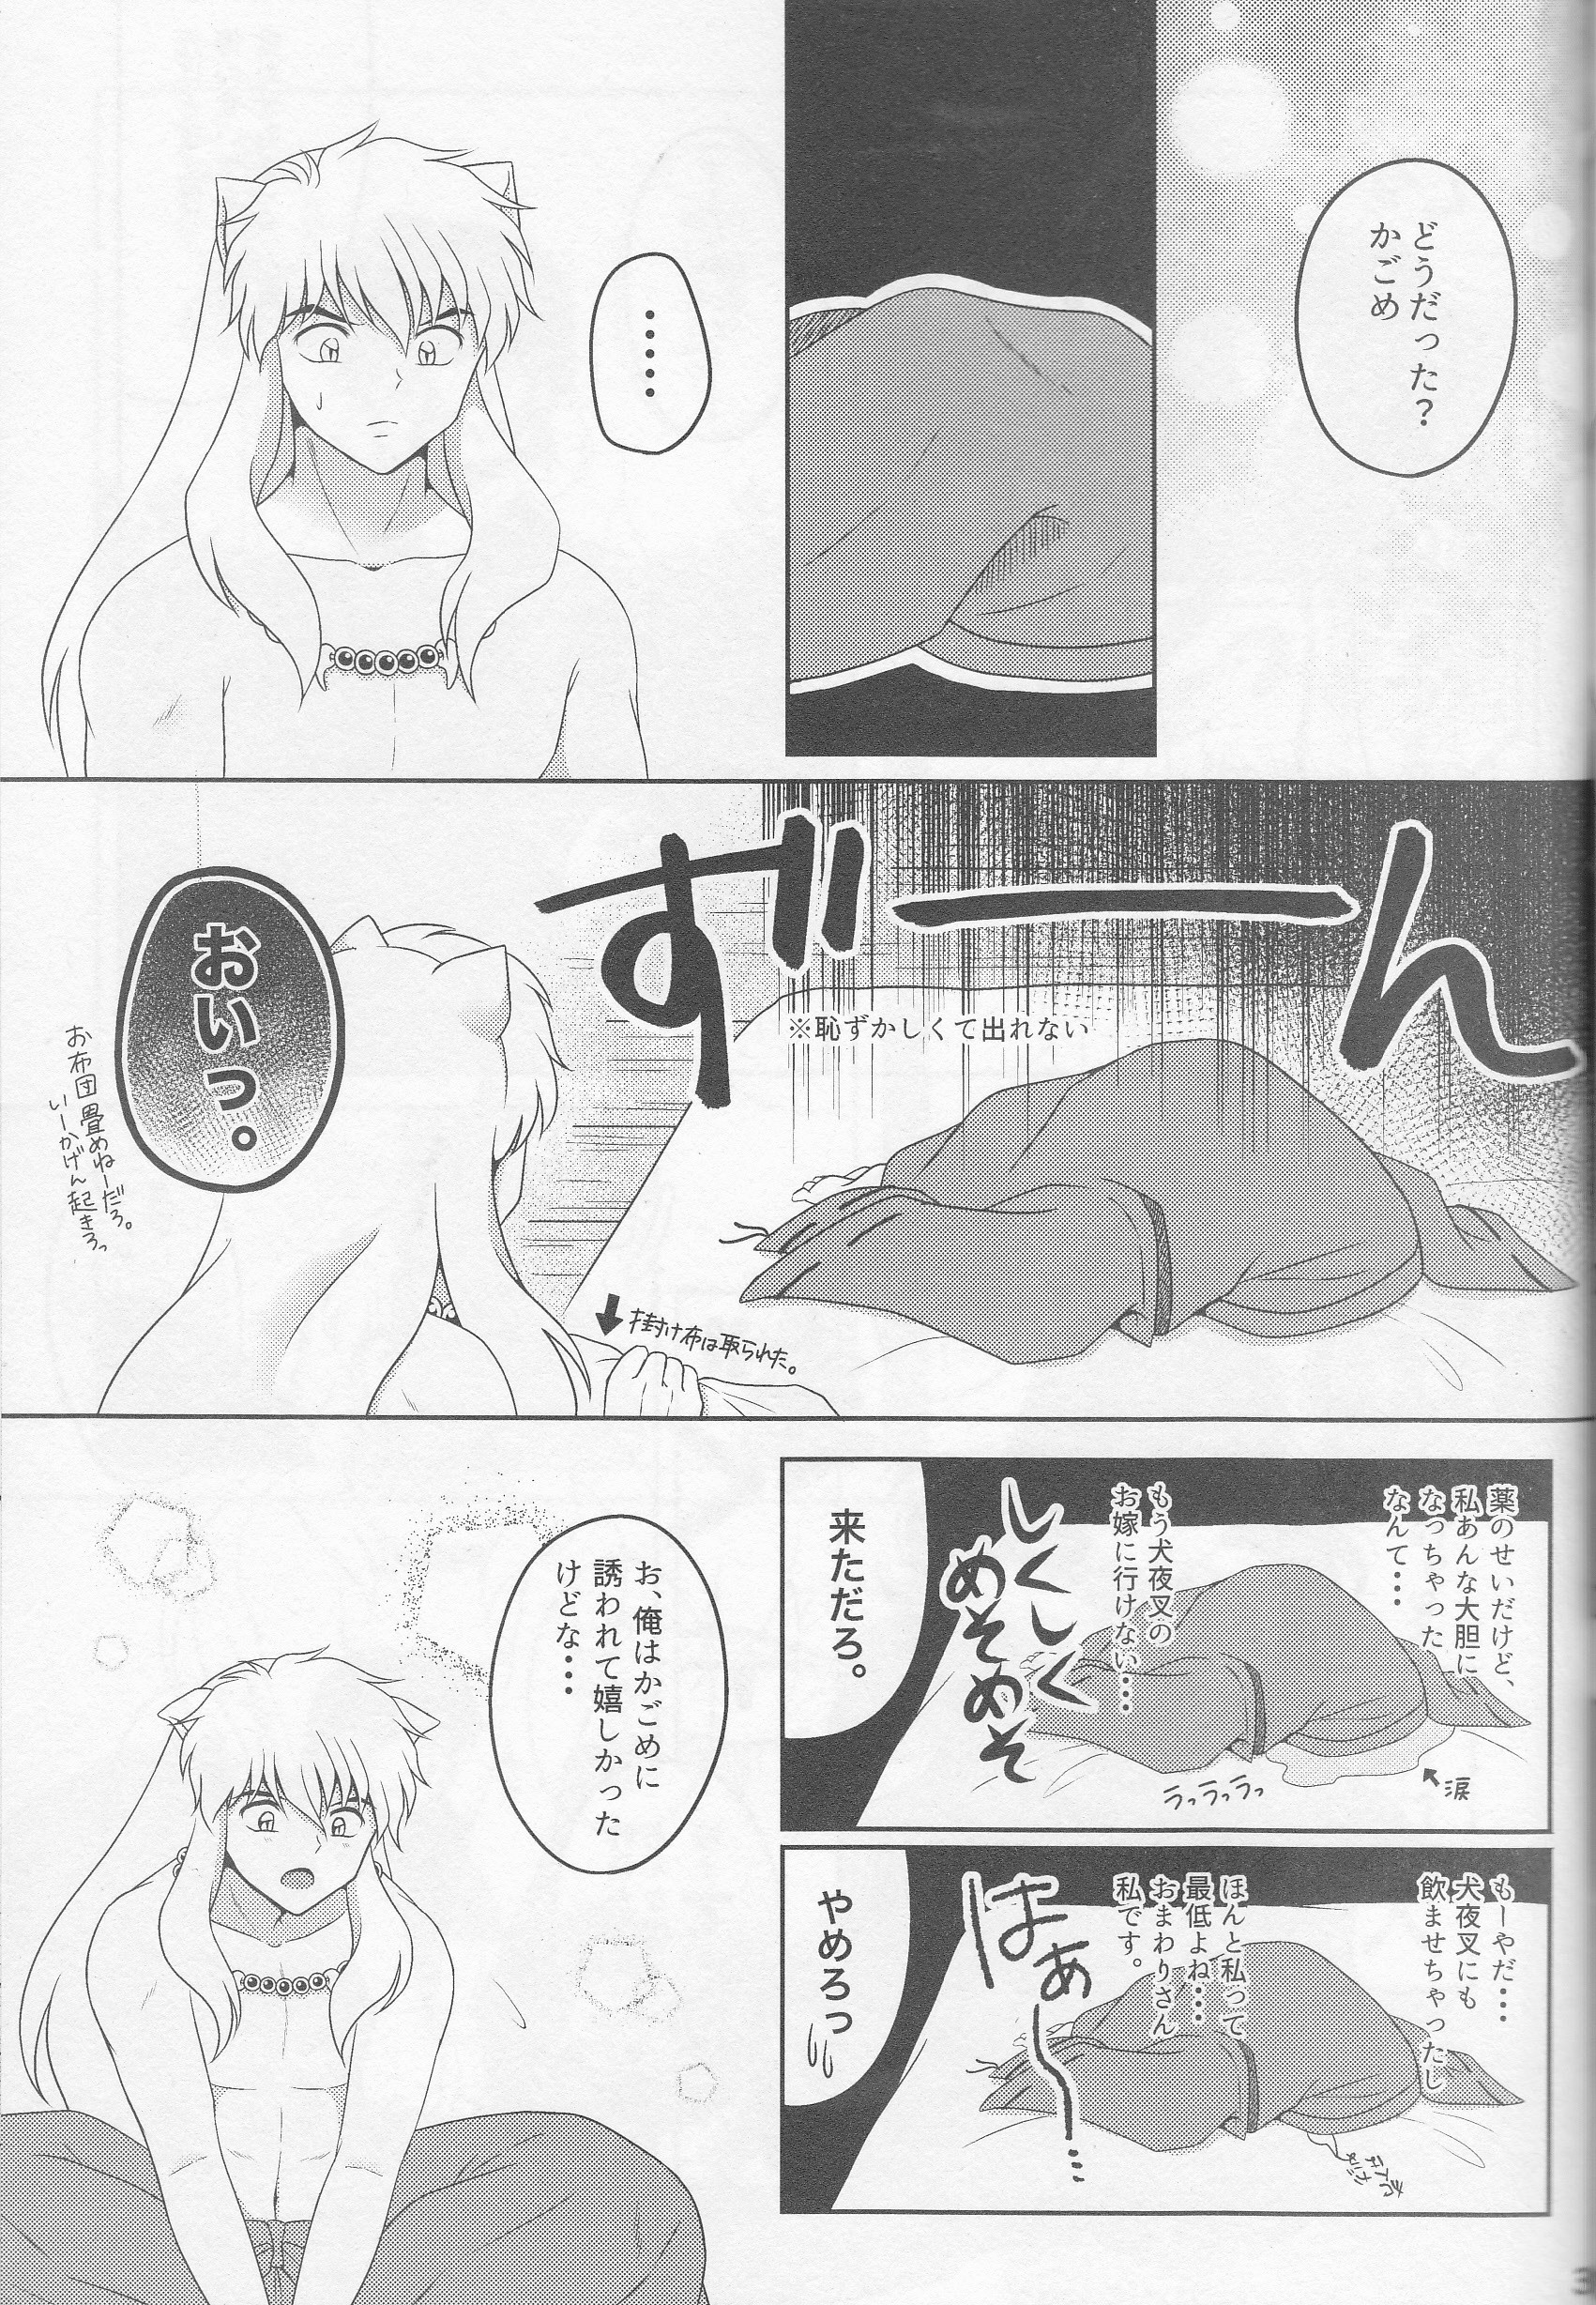 Koi Gusuri - Love drug hentai manga picture 36